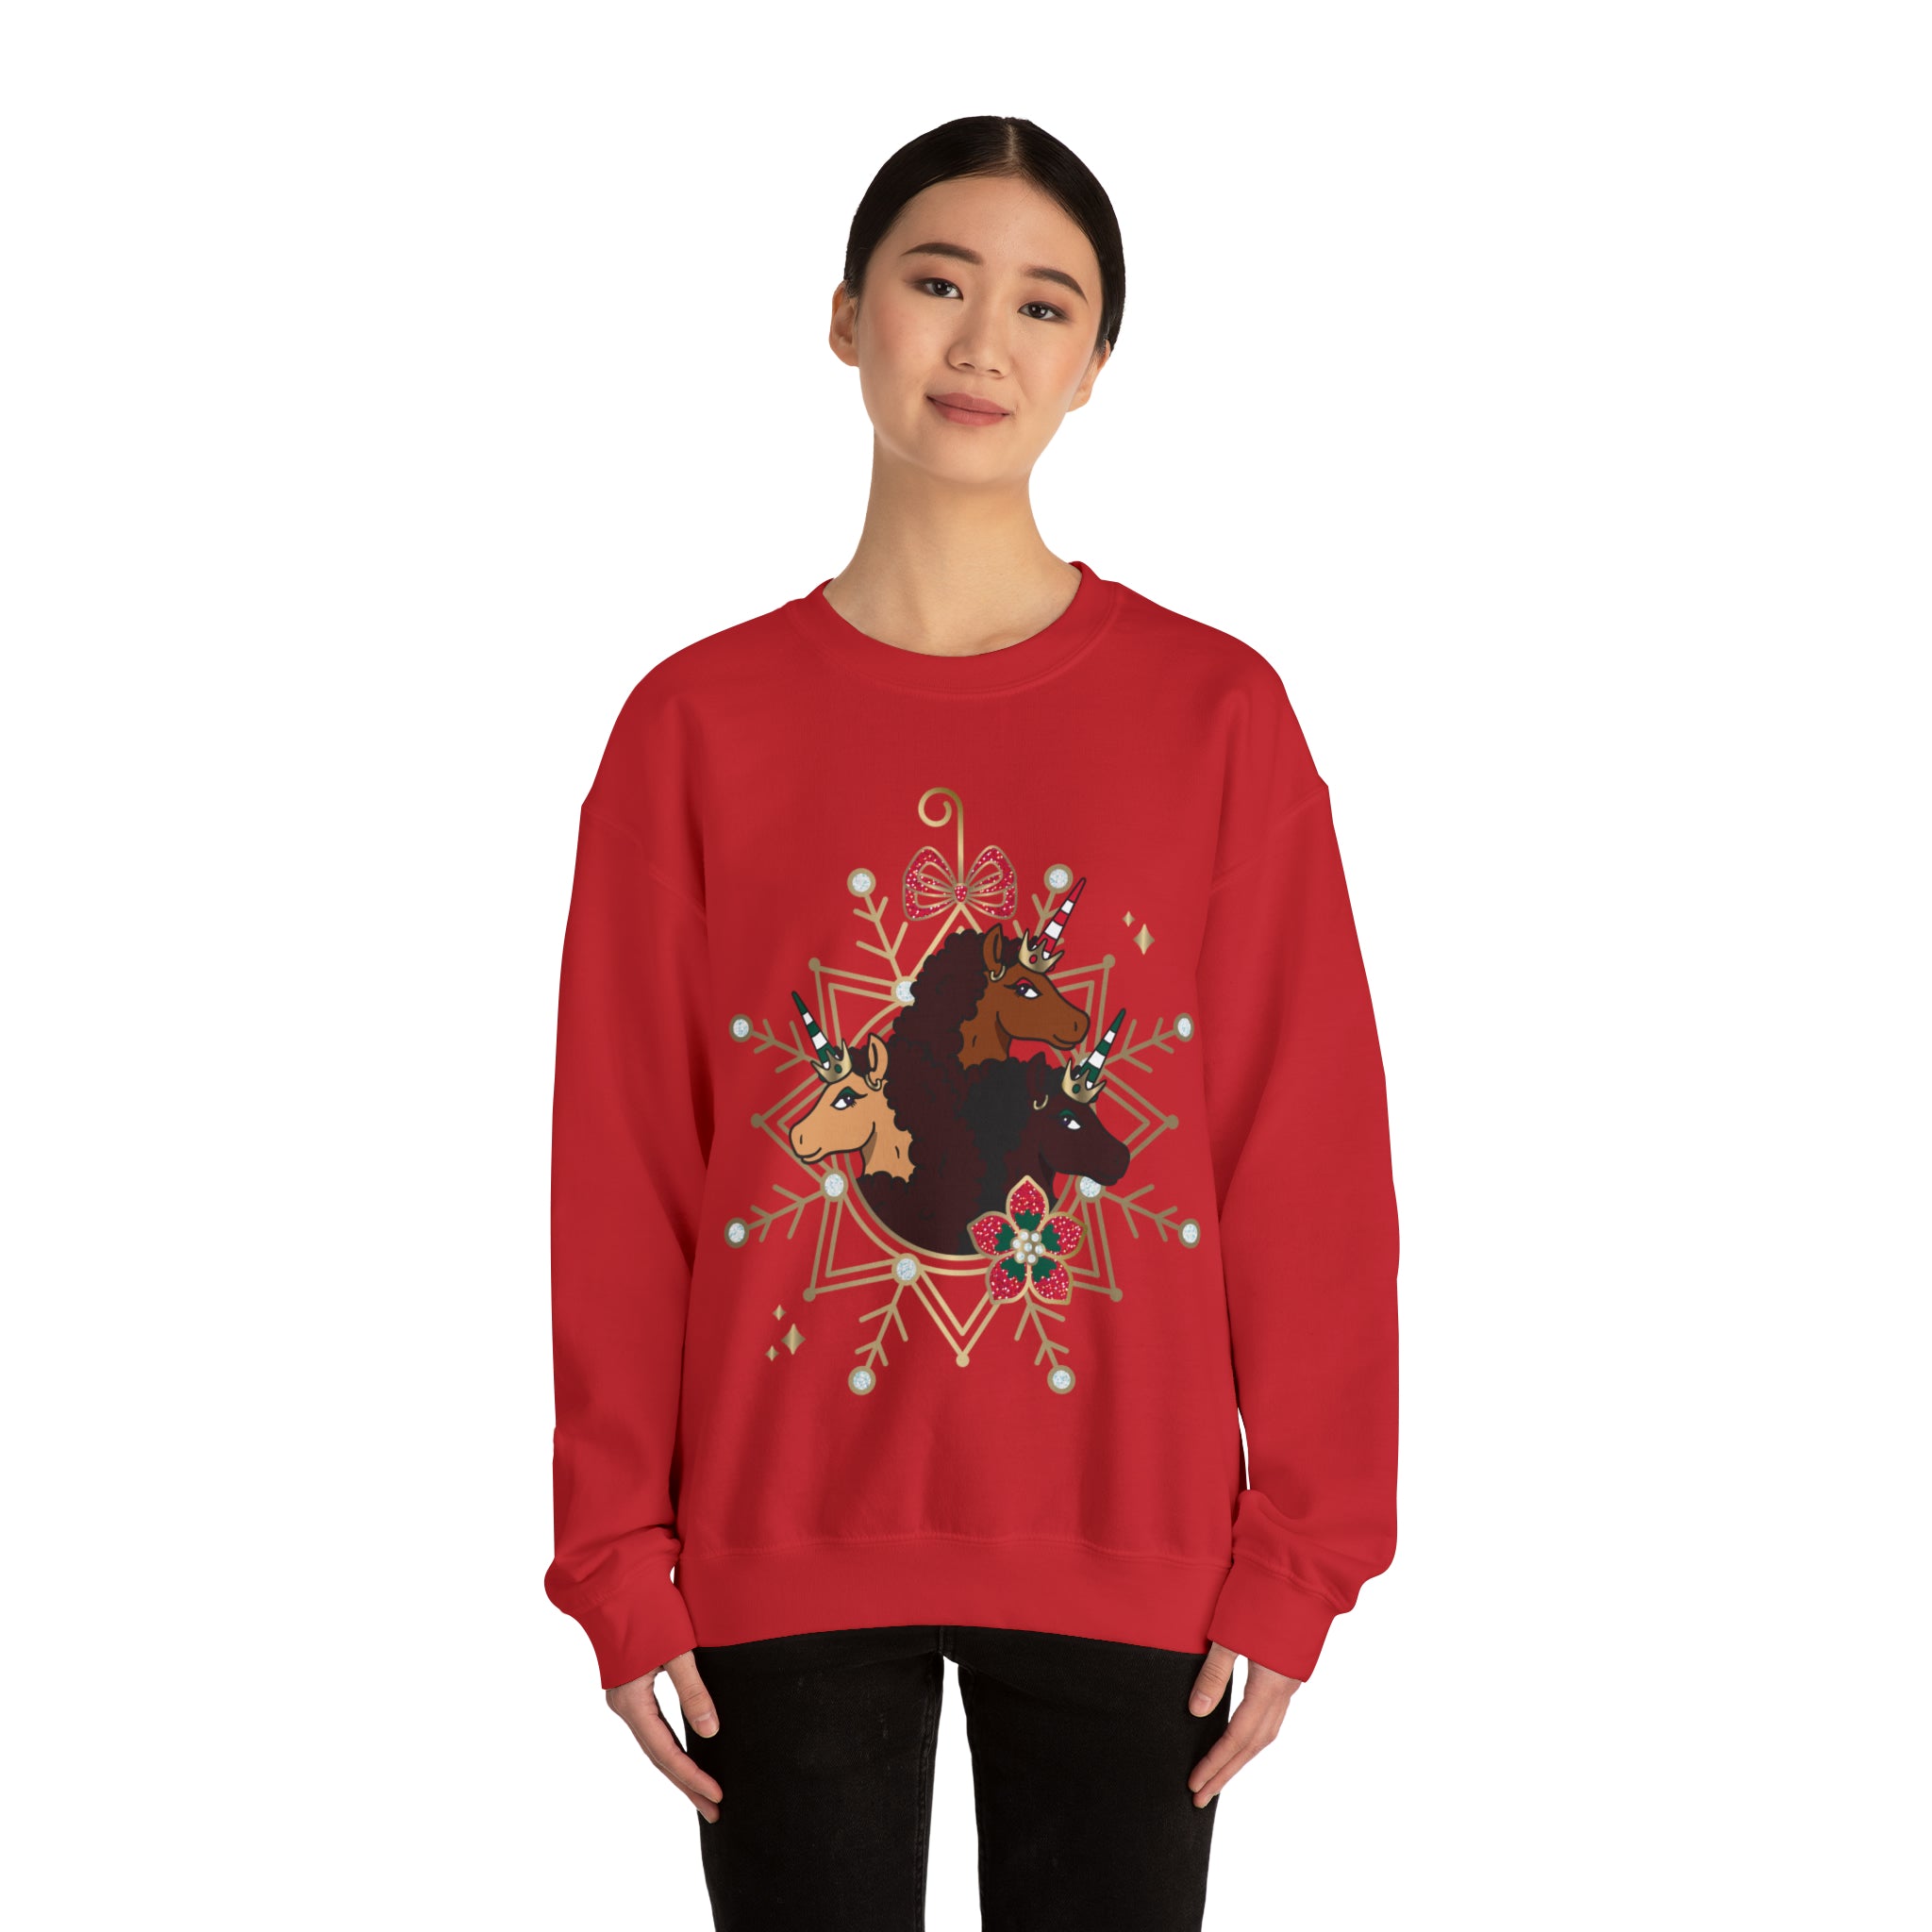 Afro Unicorn Adult Christmas Sweatshirt